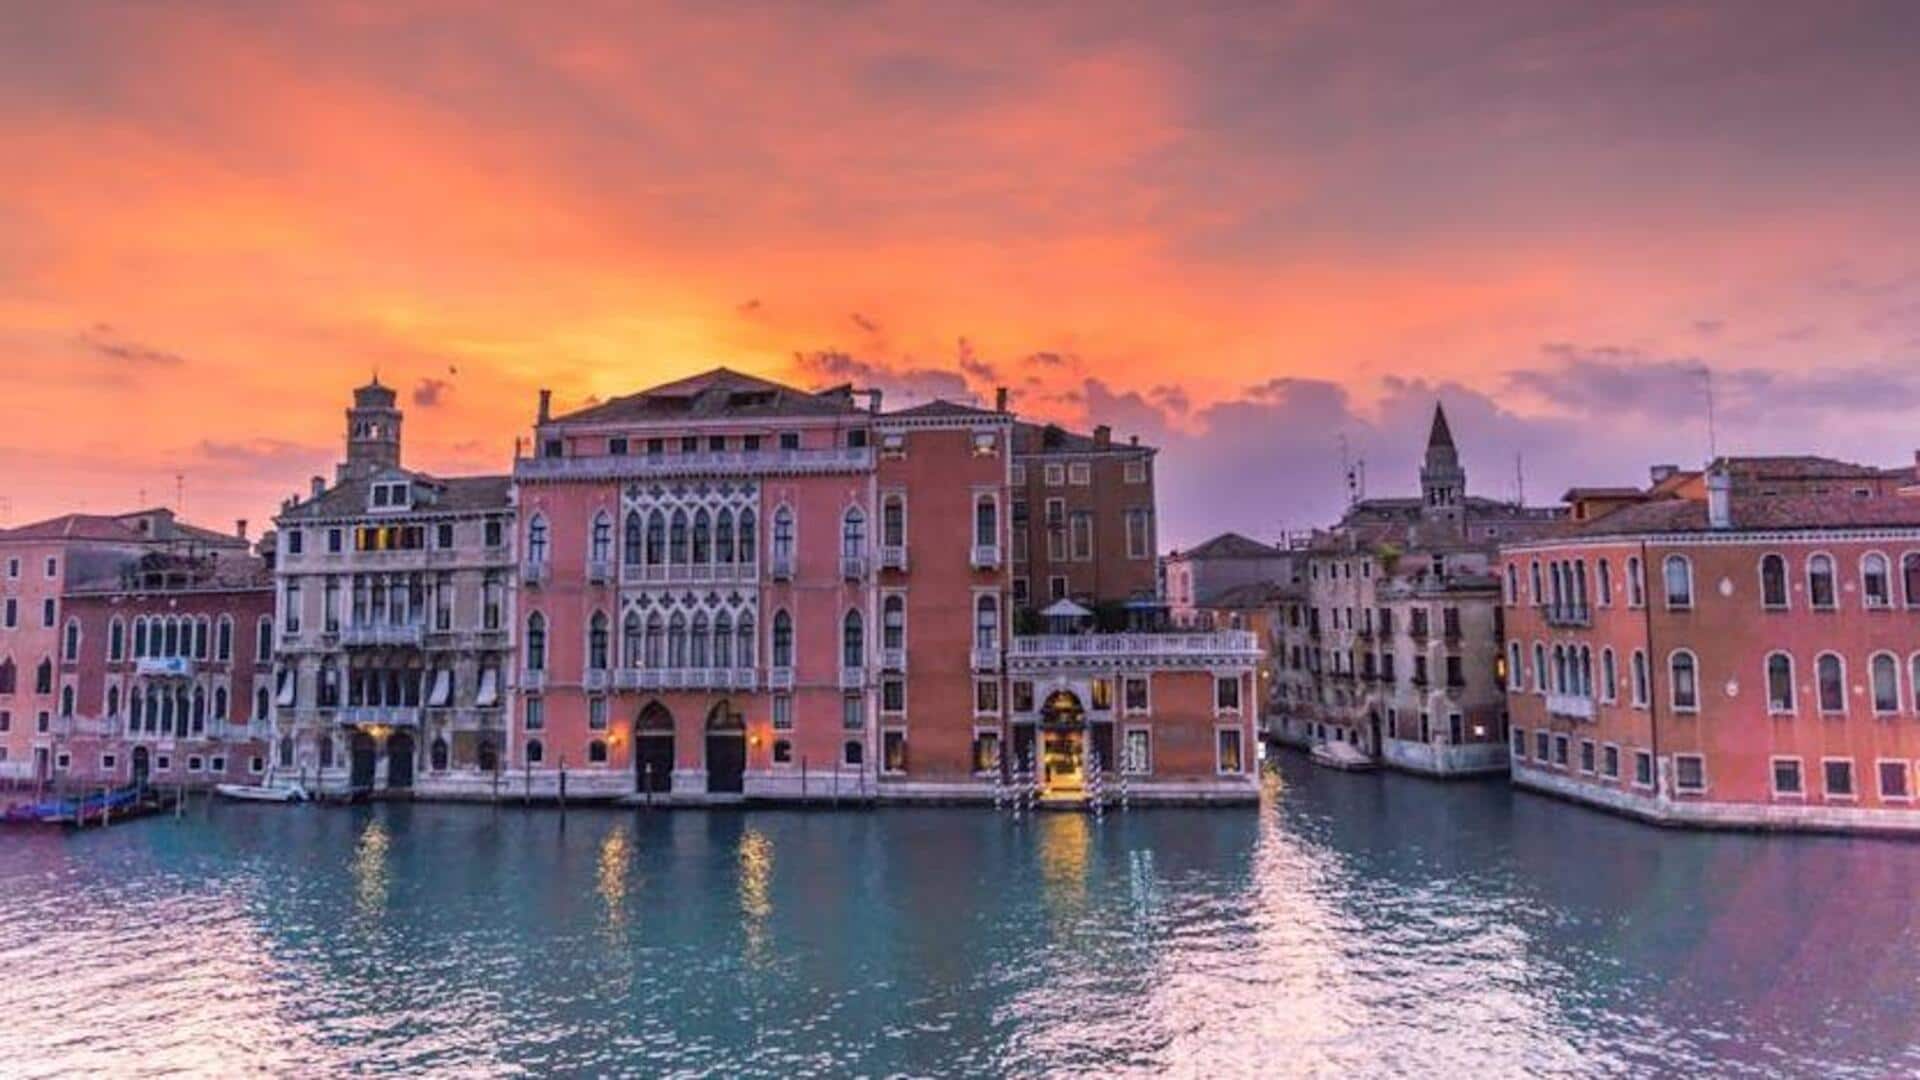 Explore Venice's hidden gems beyond the canals